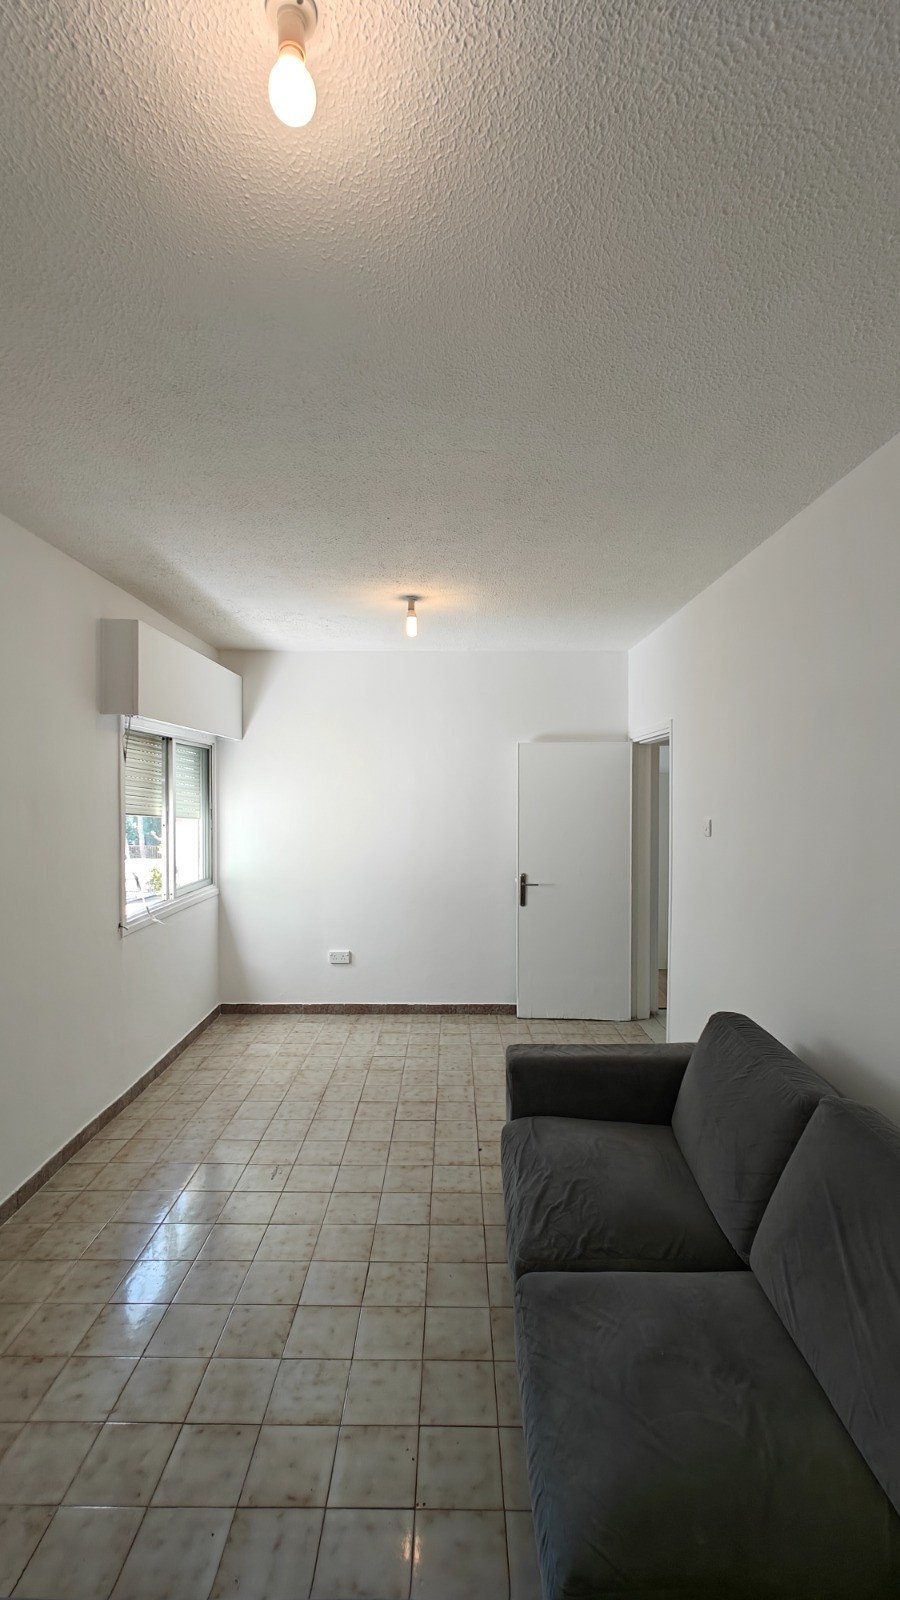 Property for Sale: Apartment (Flat) in Agia Triada, Limassol  | Key Realtor Cyprus